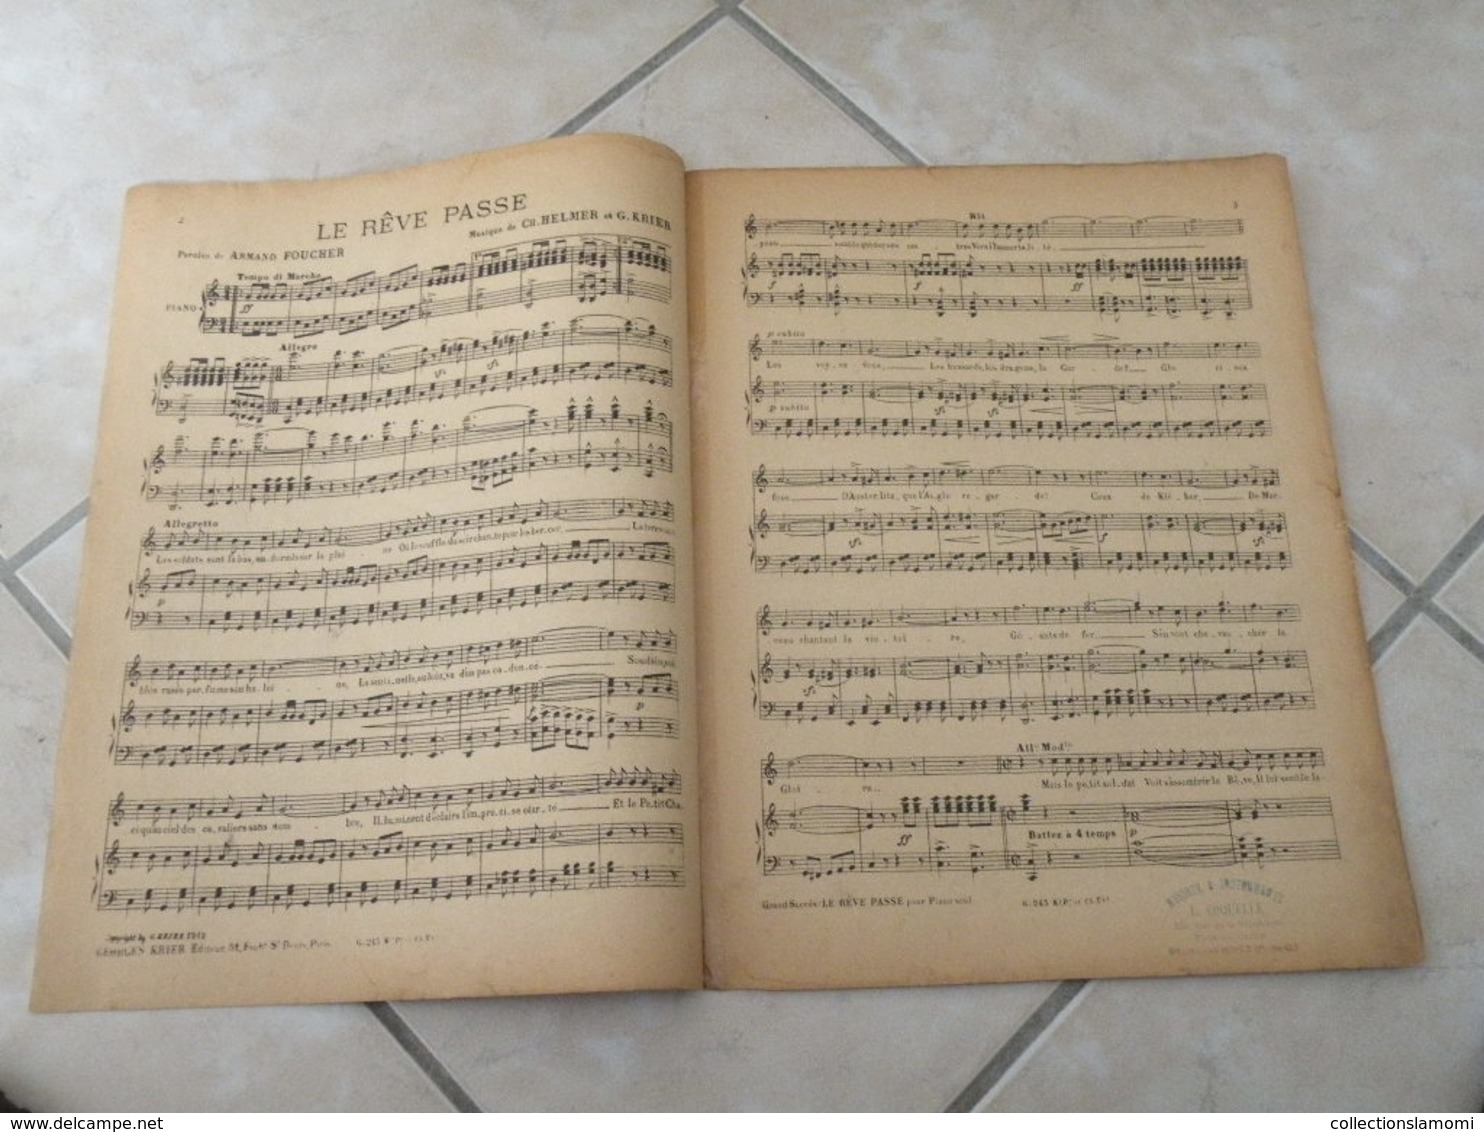 Le Rêve Passe -(Musique Ch. Helmer & G. Krier (Paroles Armand Foucher)- Partition (Piano)1918 - Keyboard Instruments